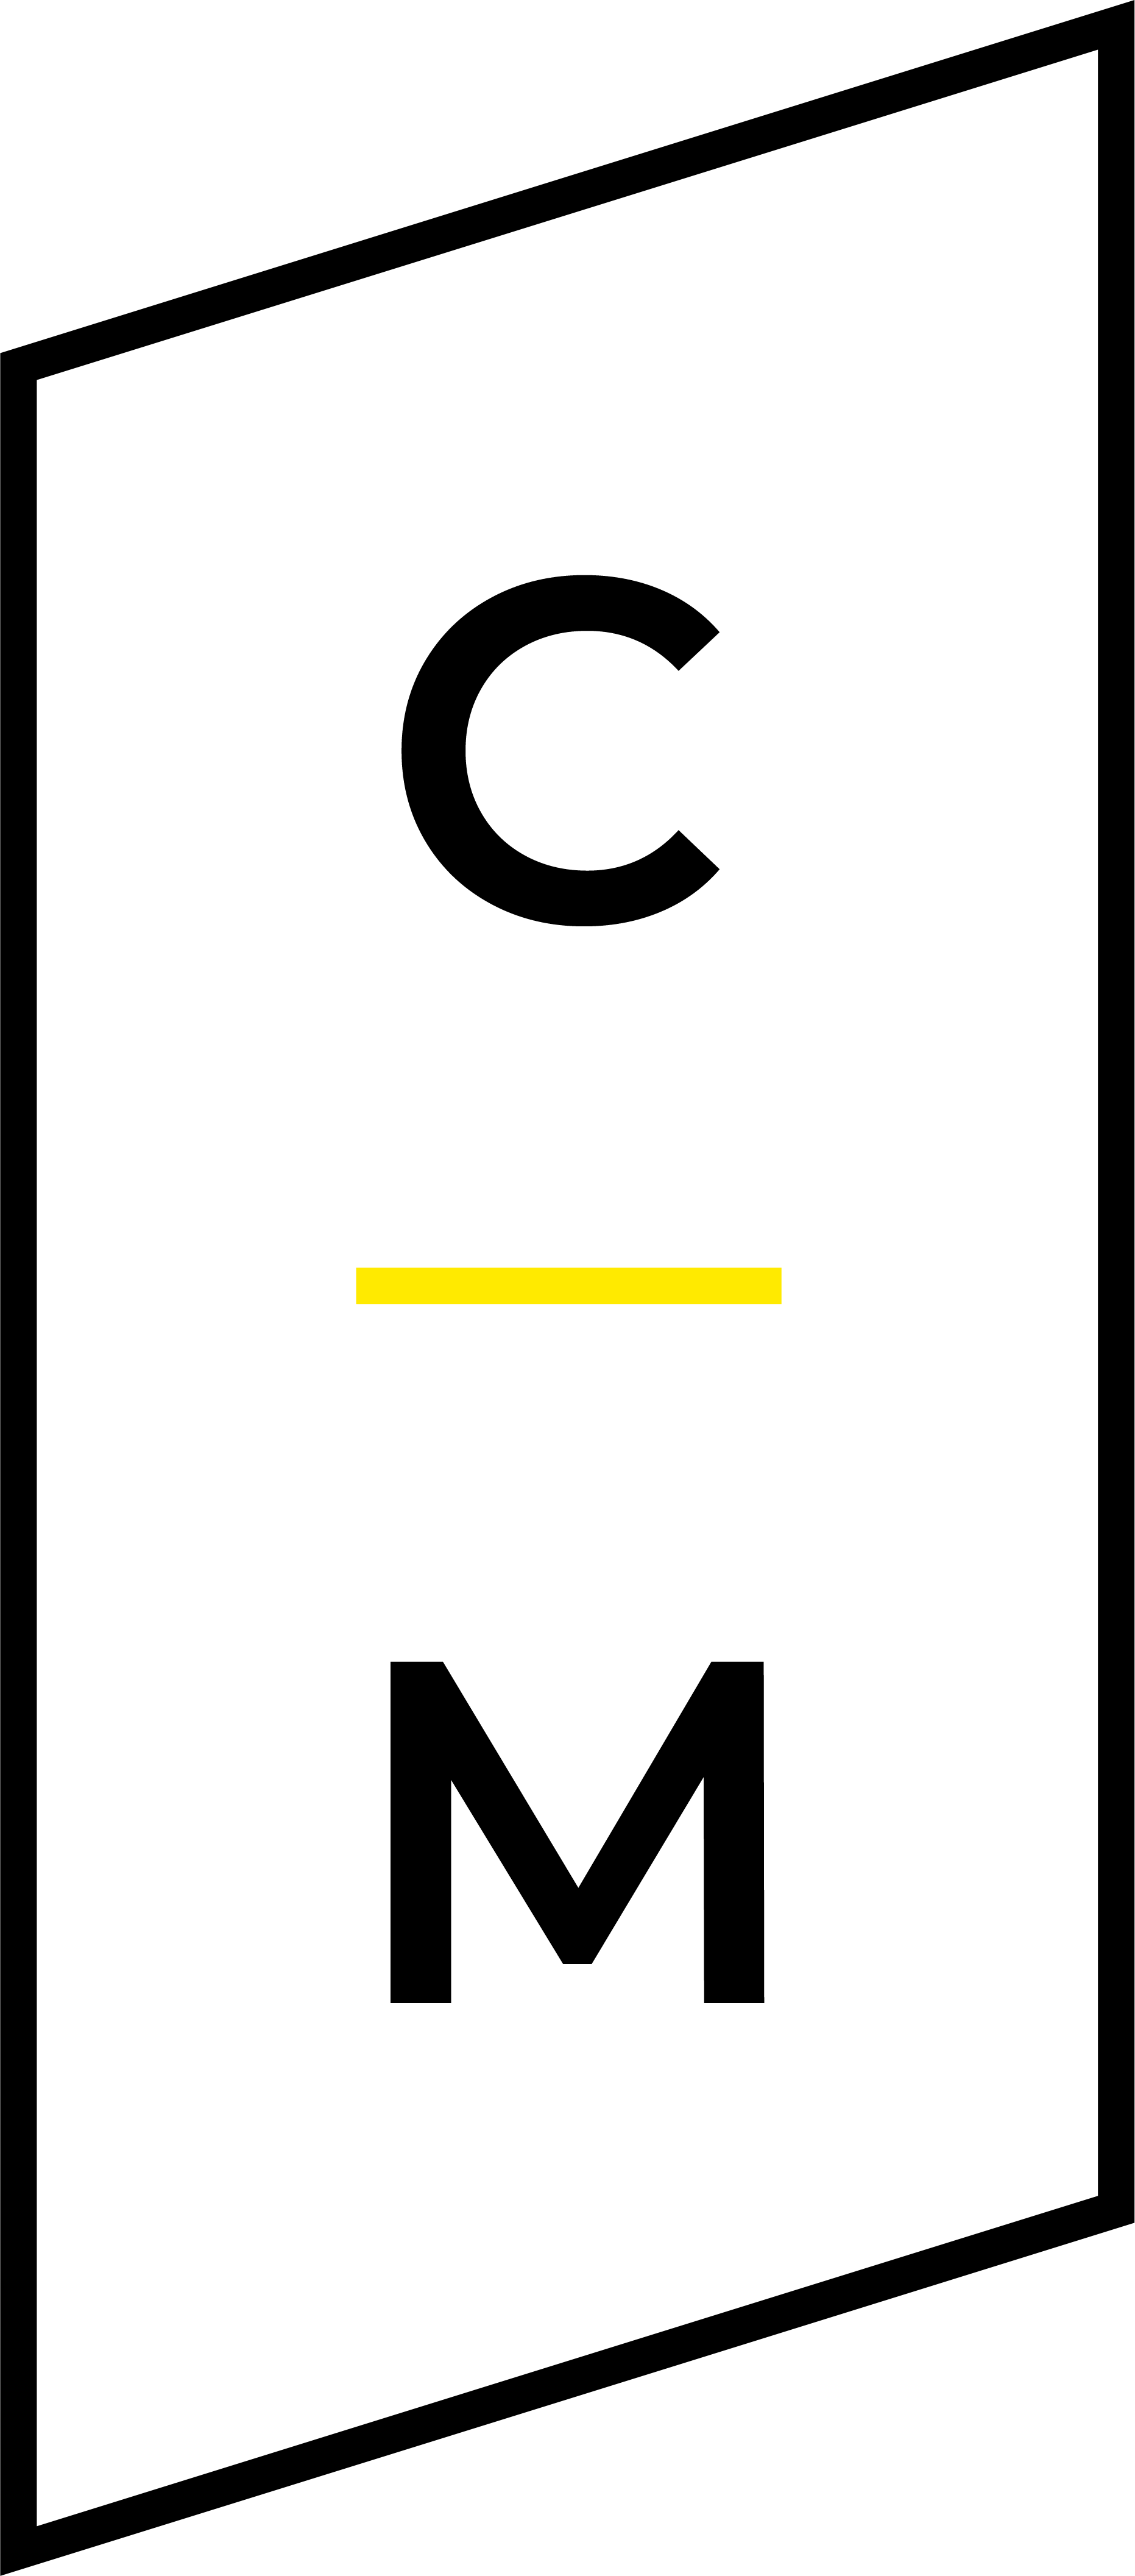 Il nuovo logo di ClaudioMastroianni.com in versione su sfondo bianco